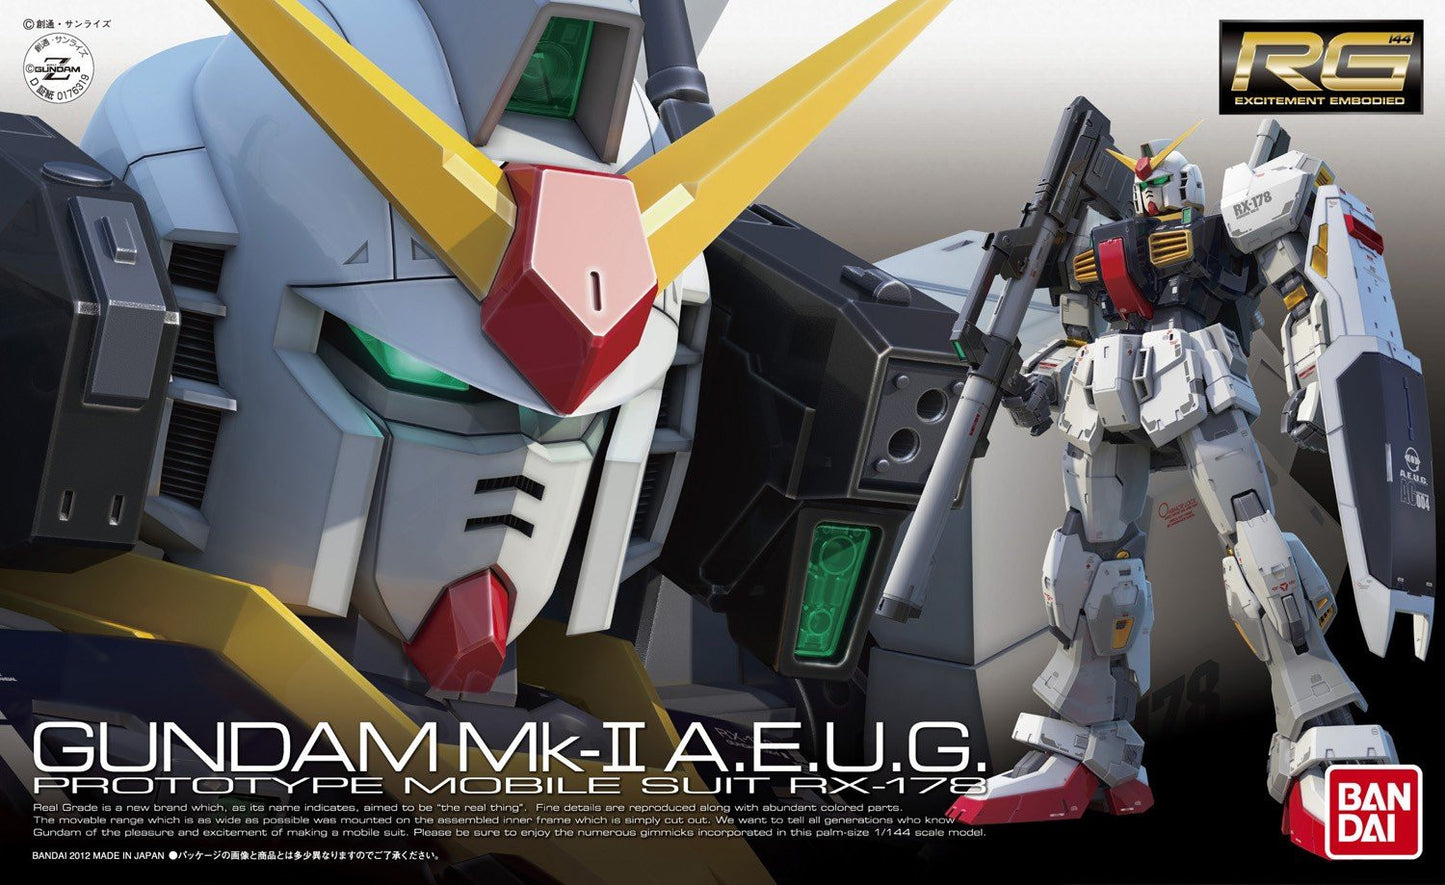 RG 1/144 #08 Gundam Mk-II A.E.U.G.